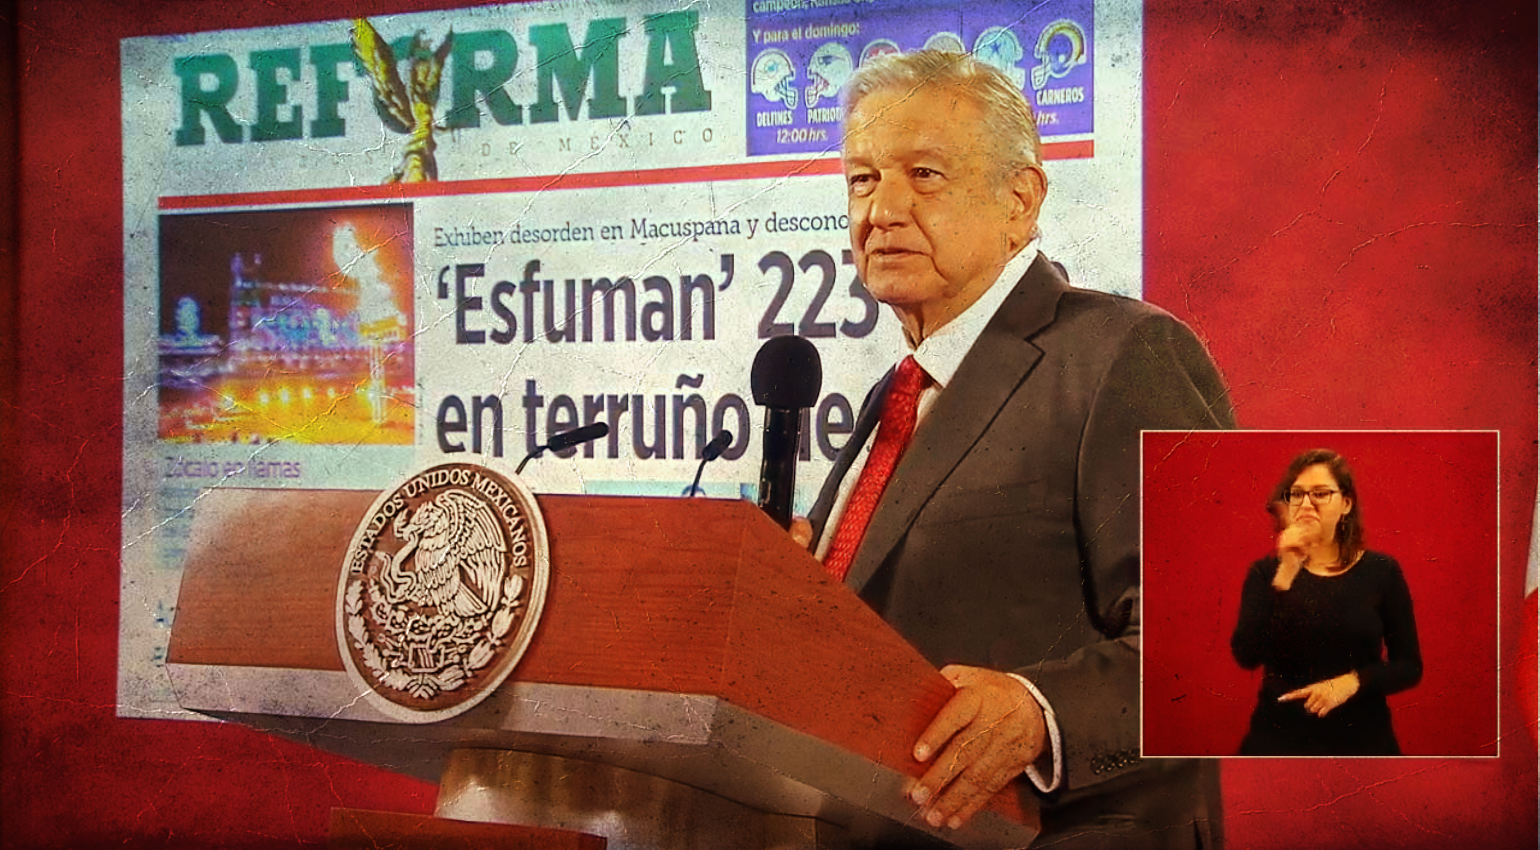 En la conferencia maromera, el presidente López Obrador no paró de insultar al Reforma y de "pasquín inmundo" no lo bajó; todo por publicar que su cuñada estaría implicada en un desvío de recursos. Pero el boletín del conservadurismo tuvo su ven-gansa.